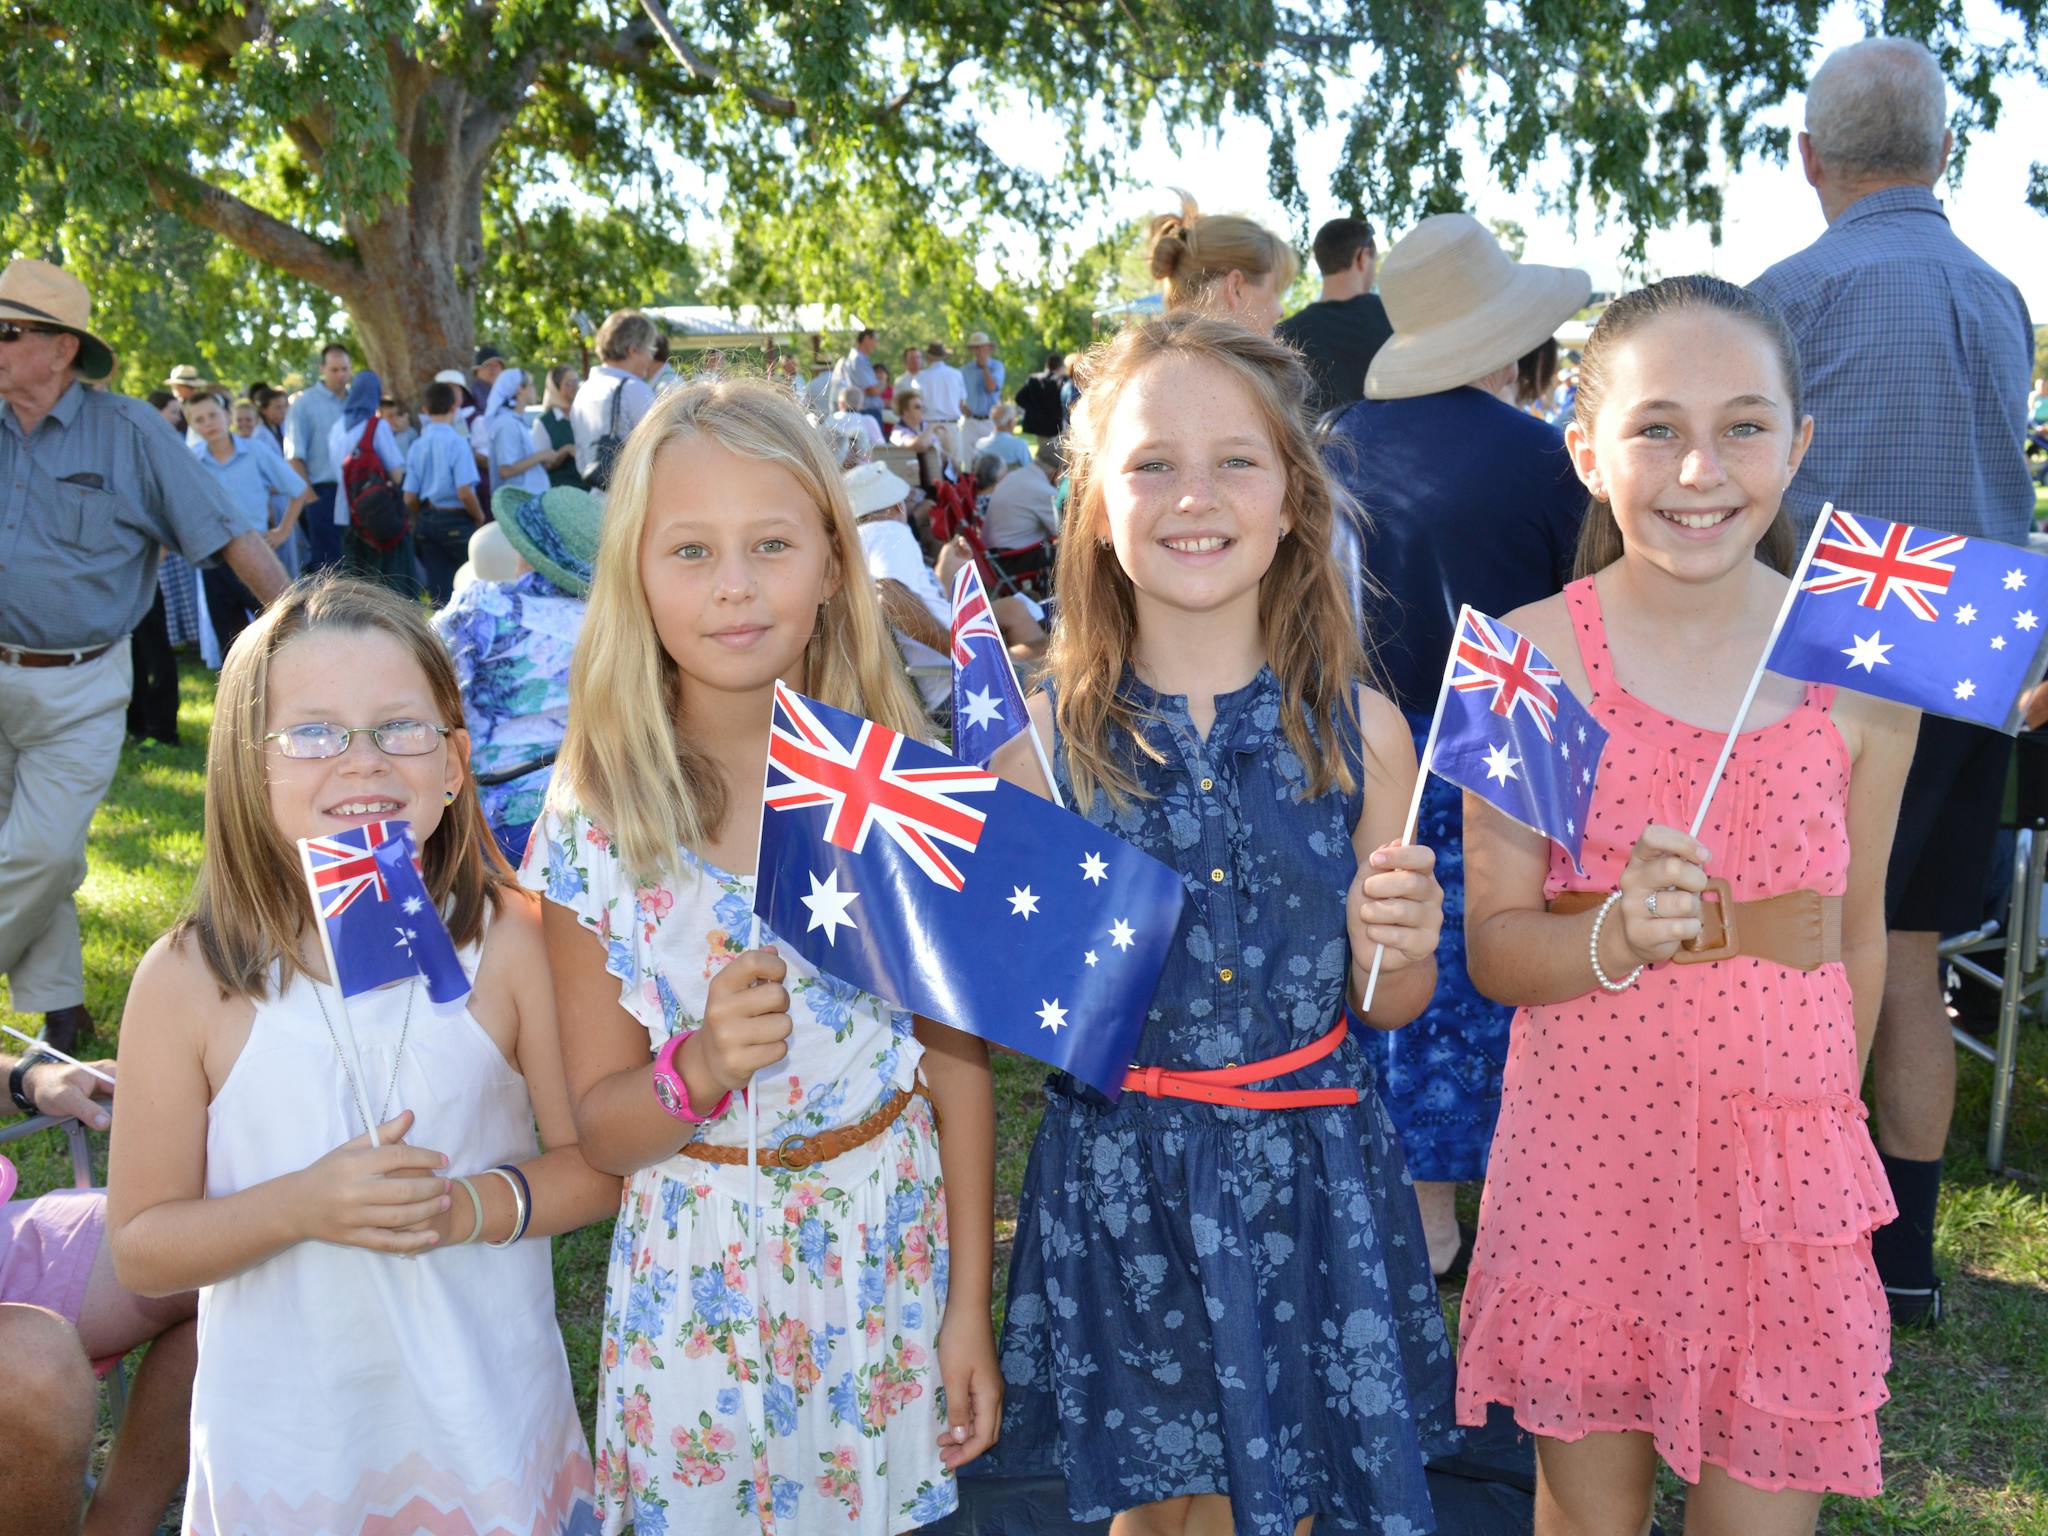 Australia Day in NSW